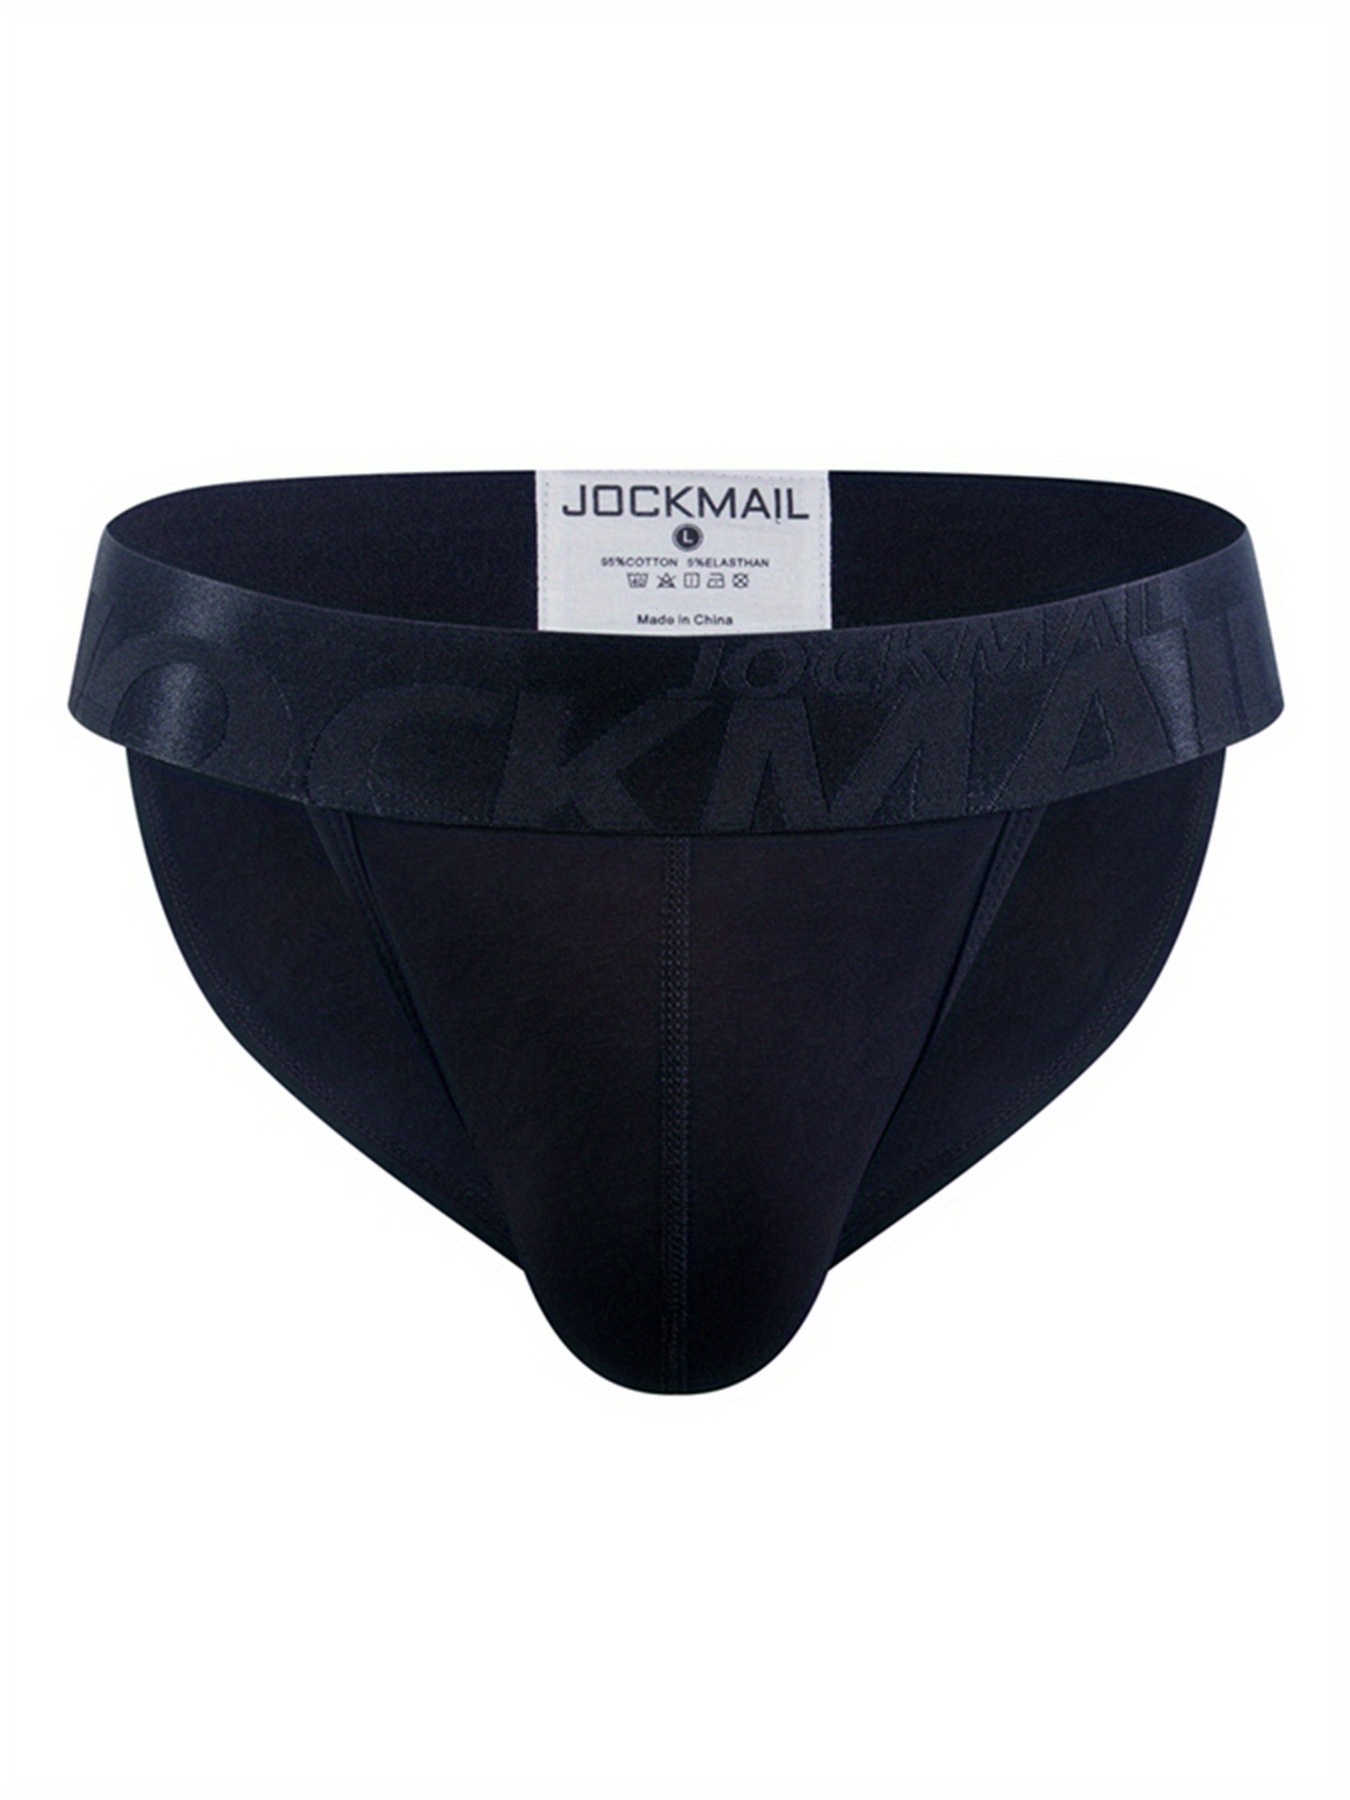 DXSBB Mens Underwear Low Rise Briefs Cheap Comfort Breathable Soft